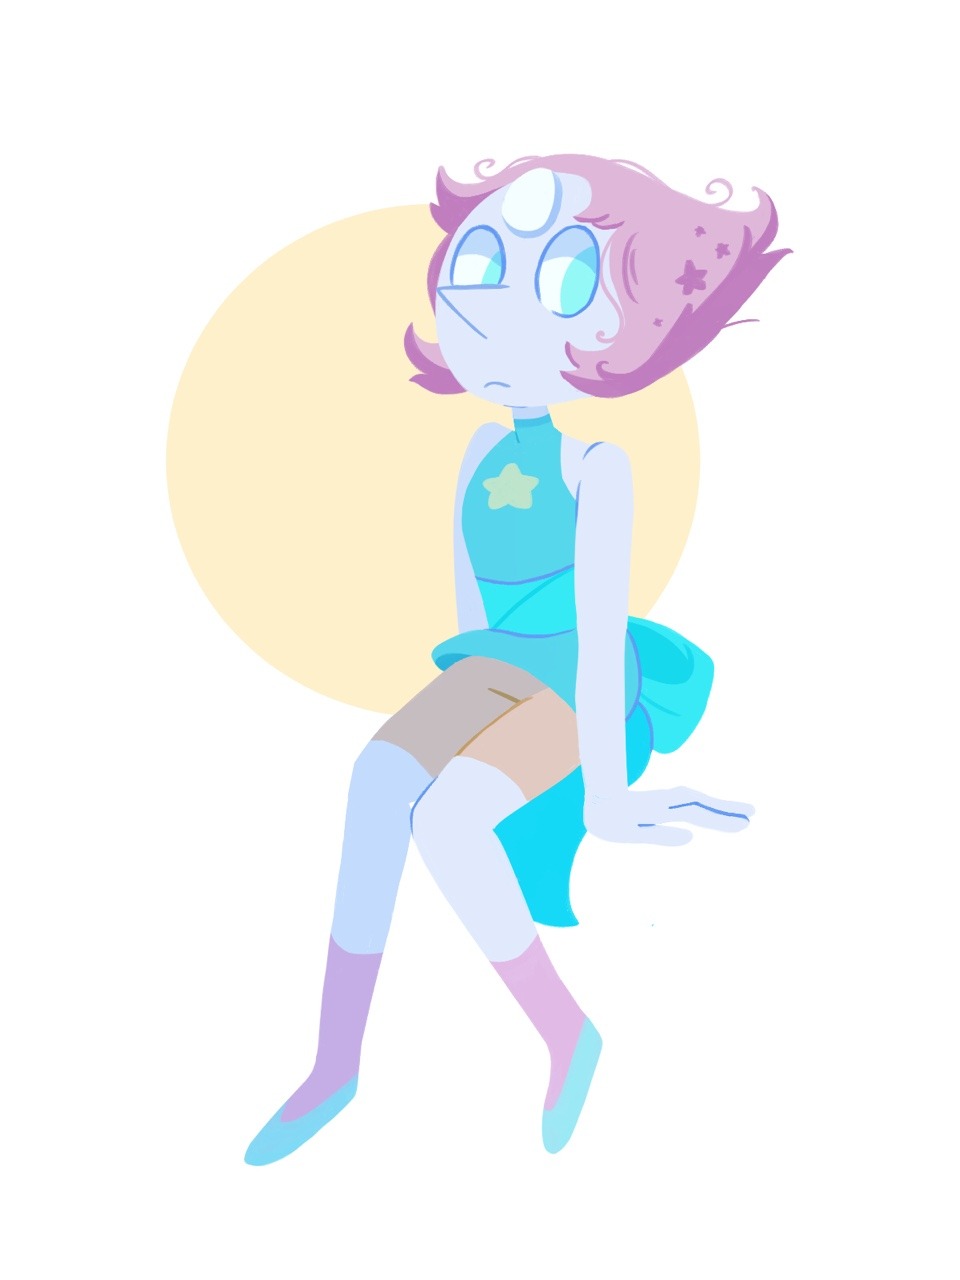 Pearlie!